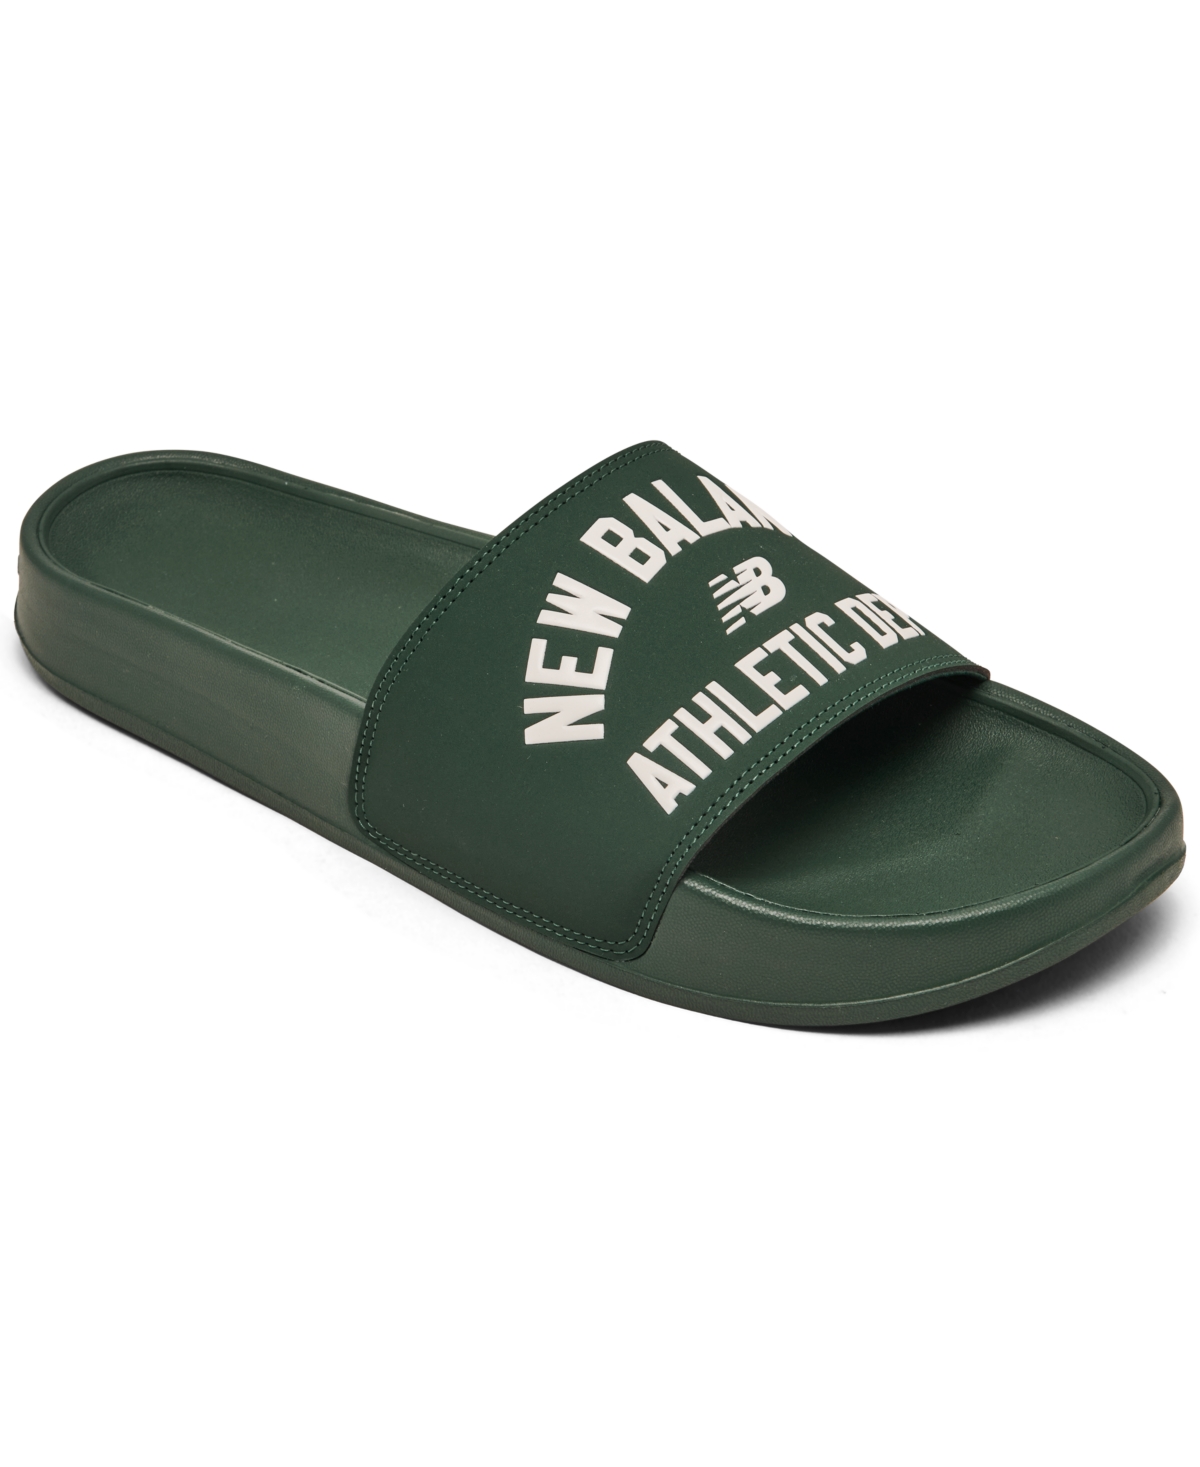 Men's 200 Slide Sandals from Finish Line - Green